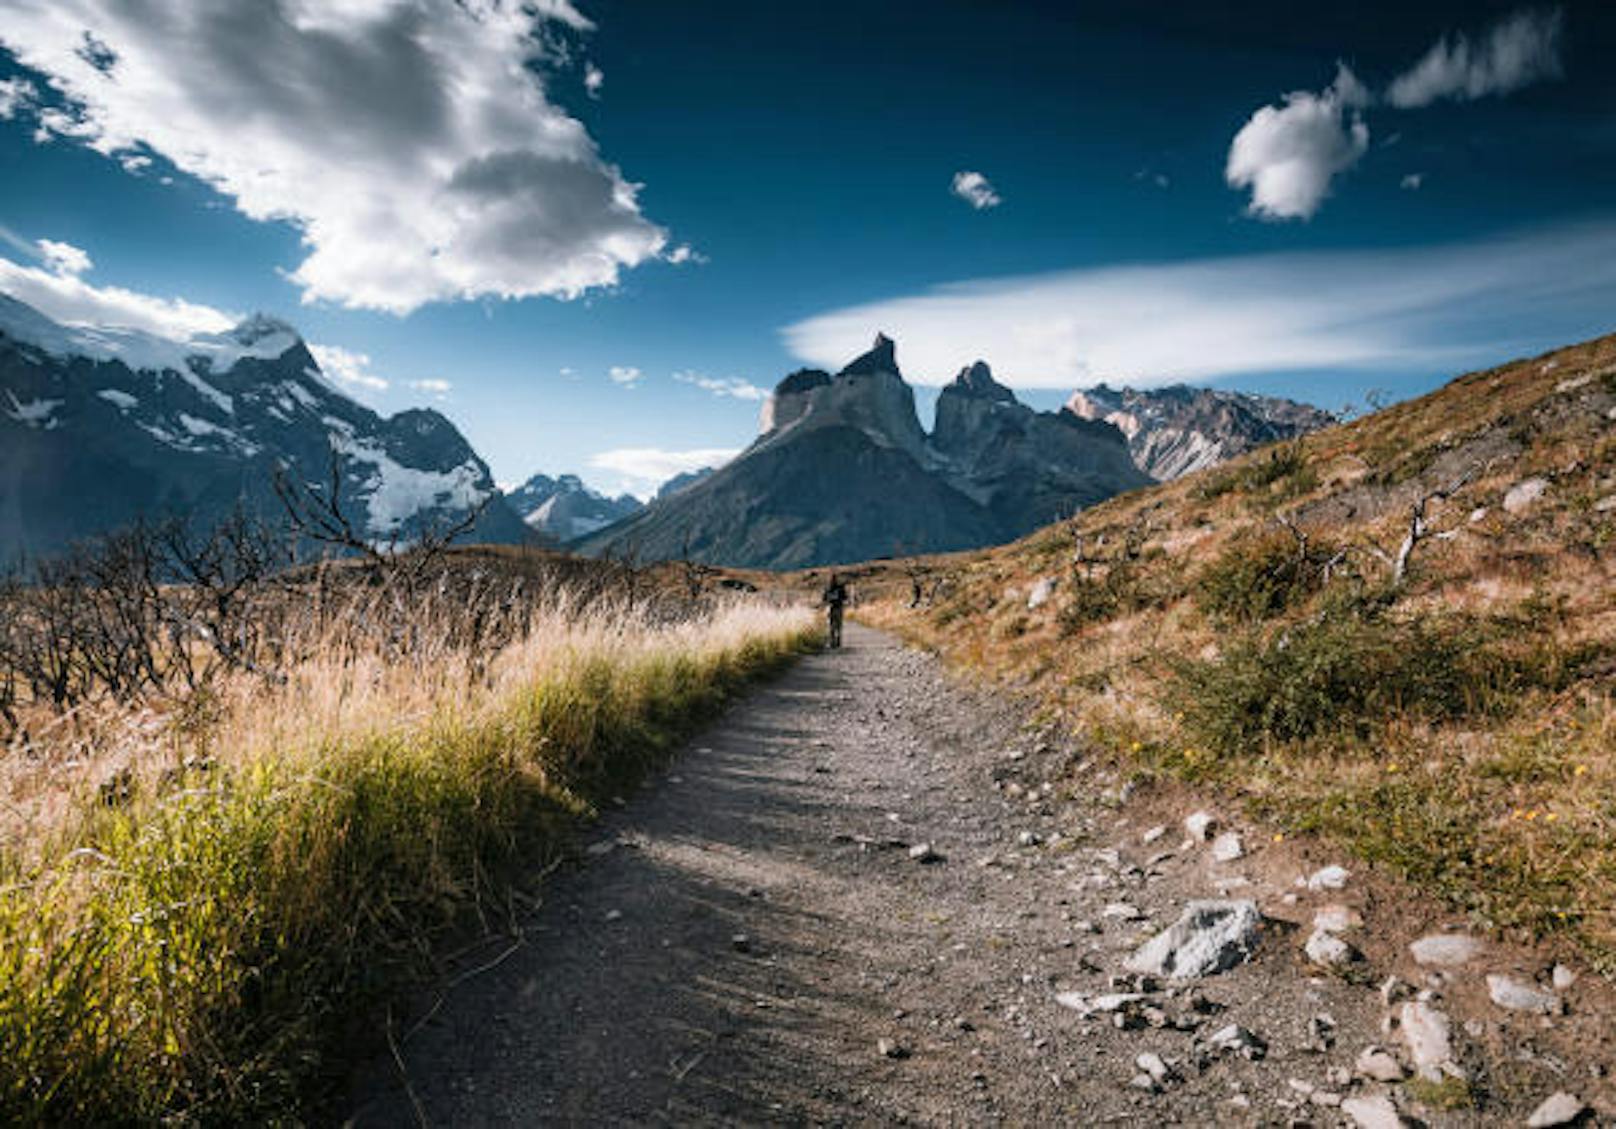 <b>Torres del Paine, Chile:</b> Die beiden wichtigsten Wanderstrecken durch den Nationalpark sind das "W" und das "O" - benannt nach ihrer Form. Wer die längere O-Route absolviert, erlebt tiefgrüne Wälder und karges Bergland von ihrer schönsten Seite. Distanz: 130 Kilometer, Dauer: 6 bis 8 Tage, Anforderung: mittel.